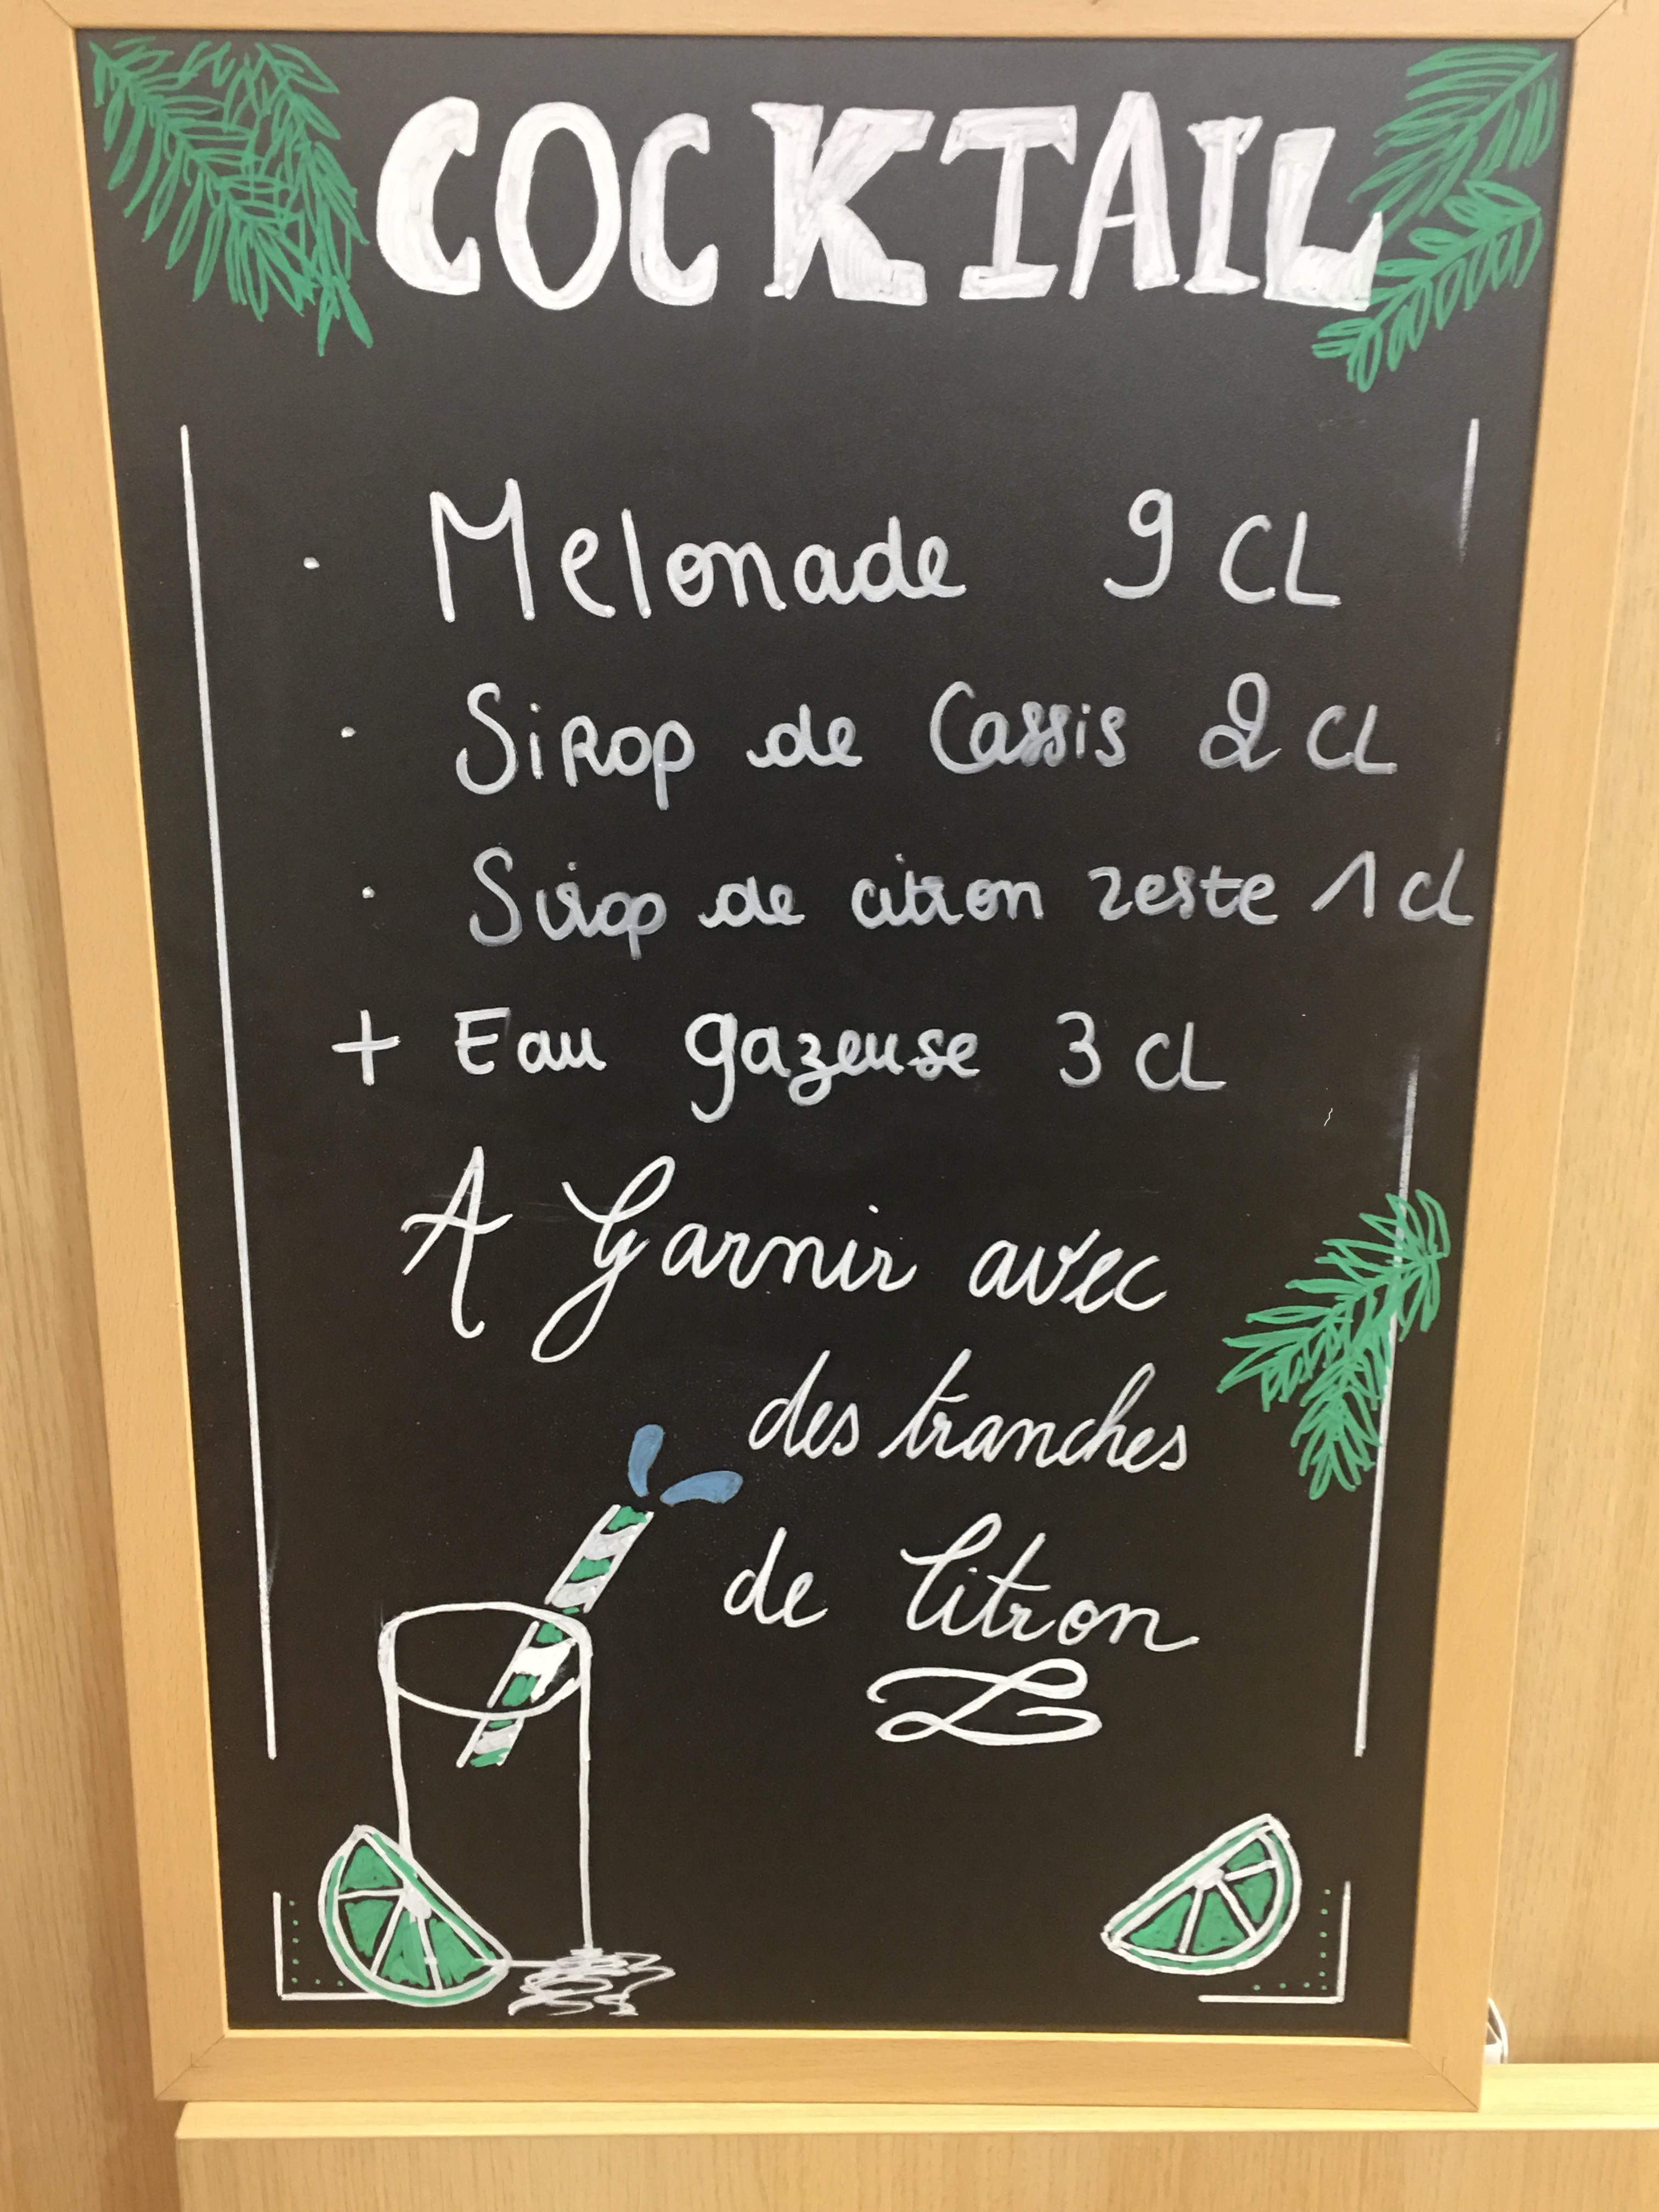 Une idée de cocktail Melonade